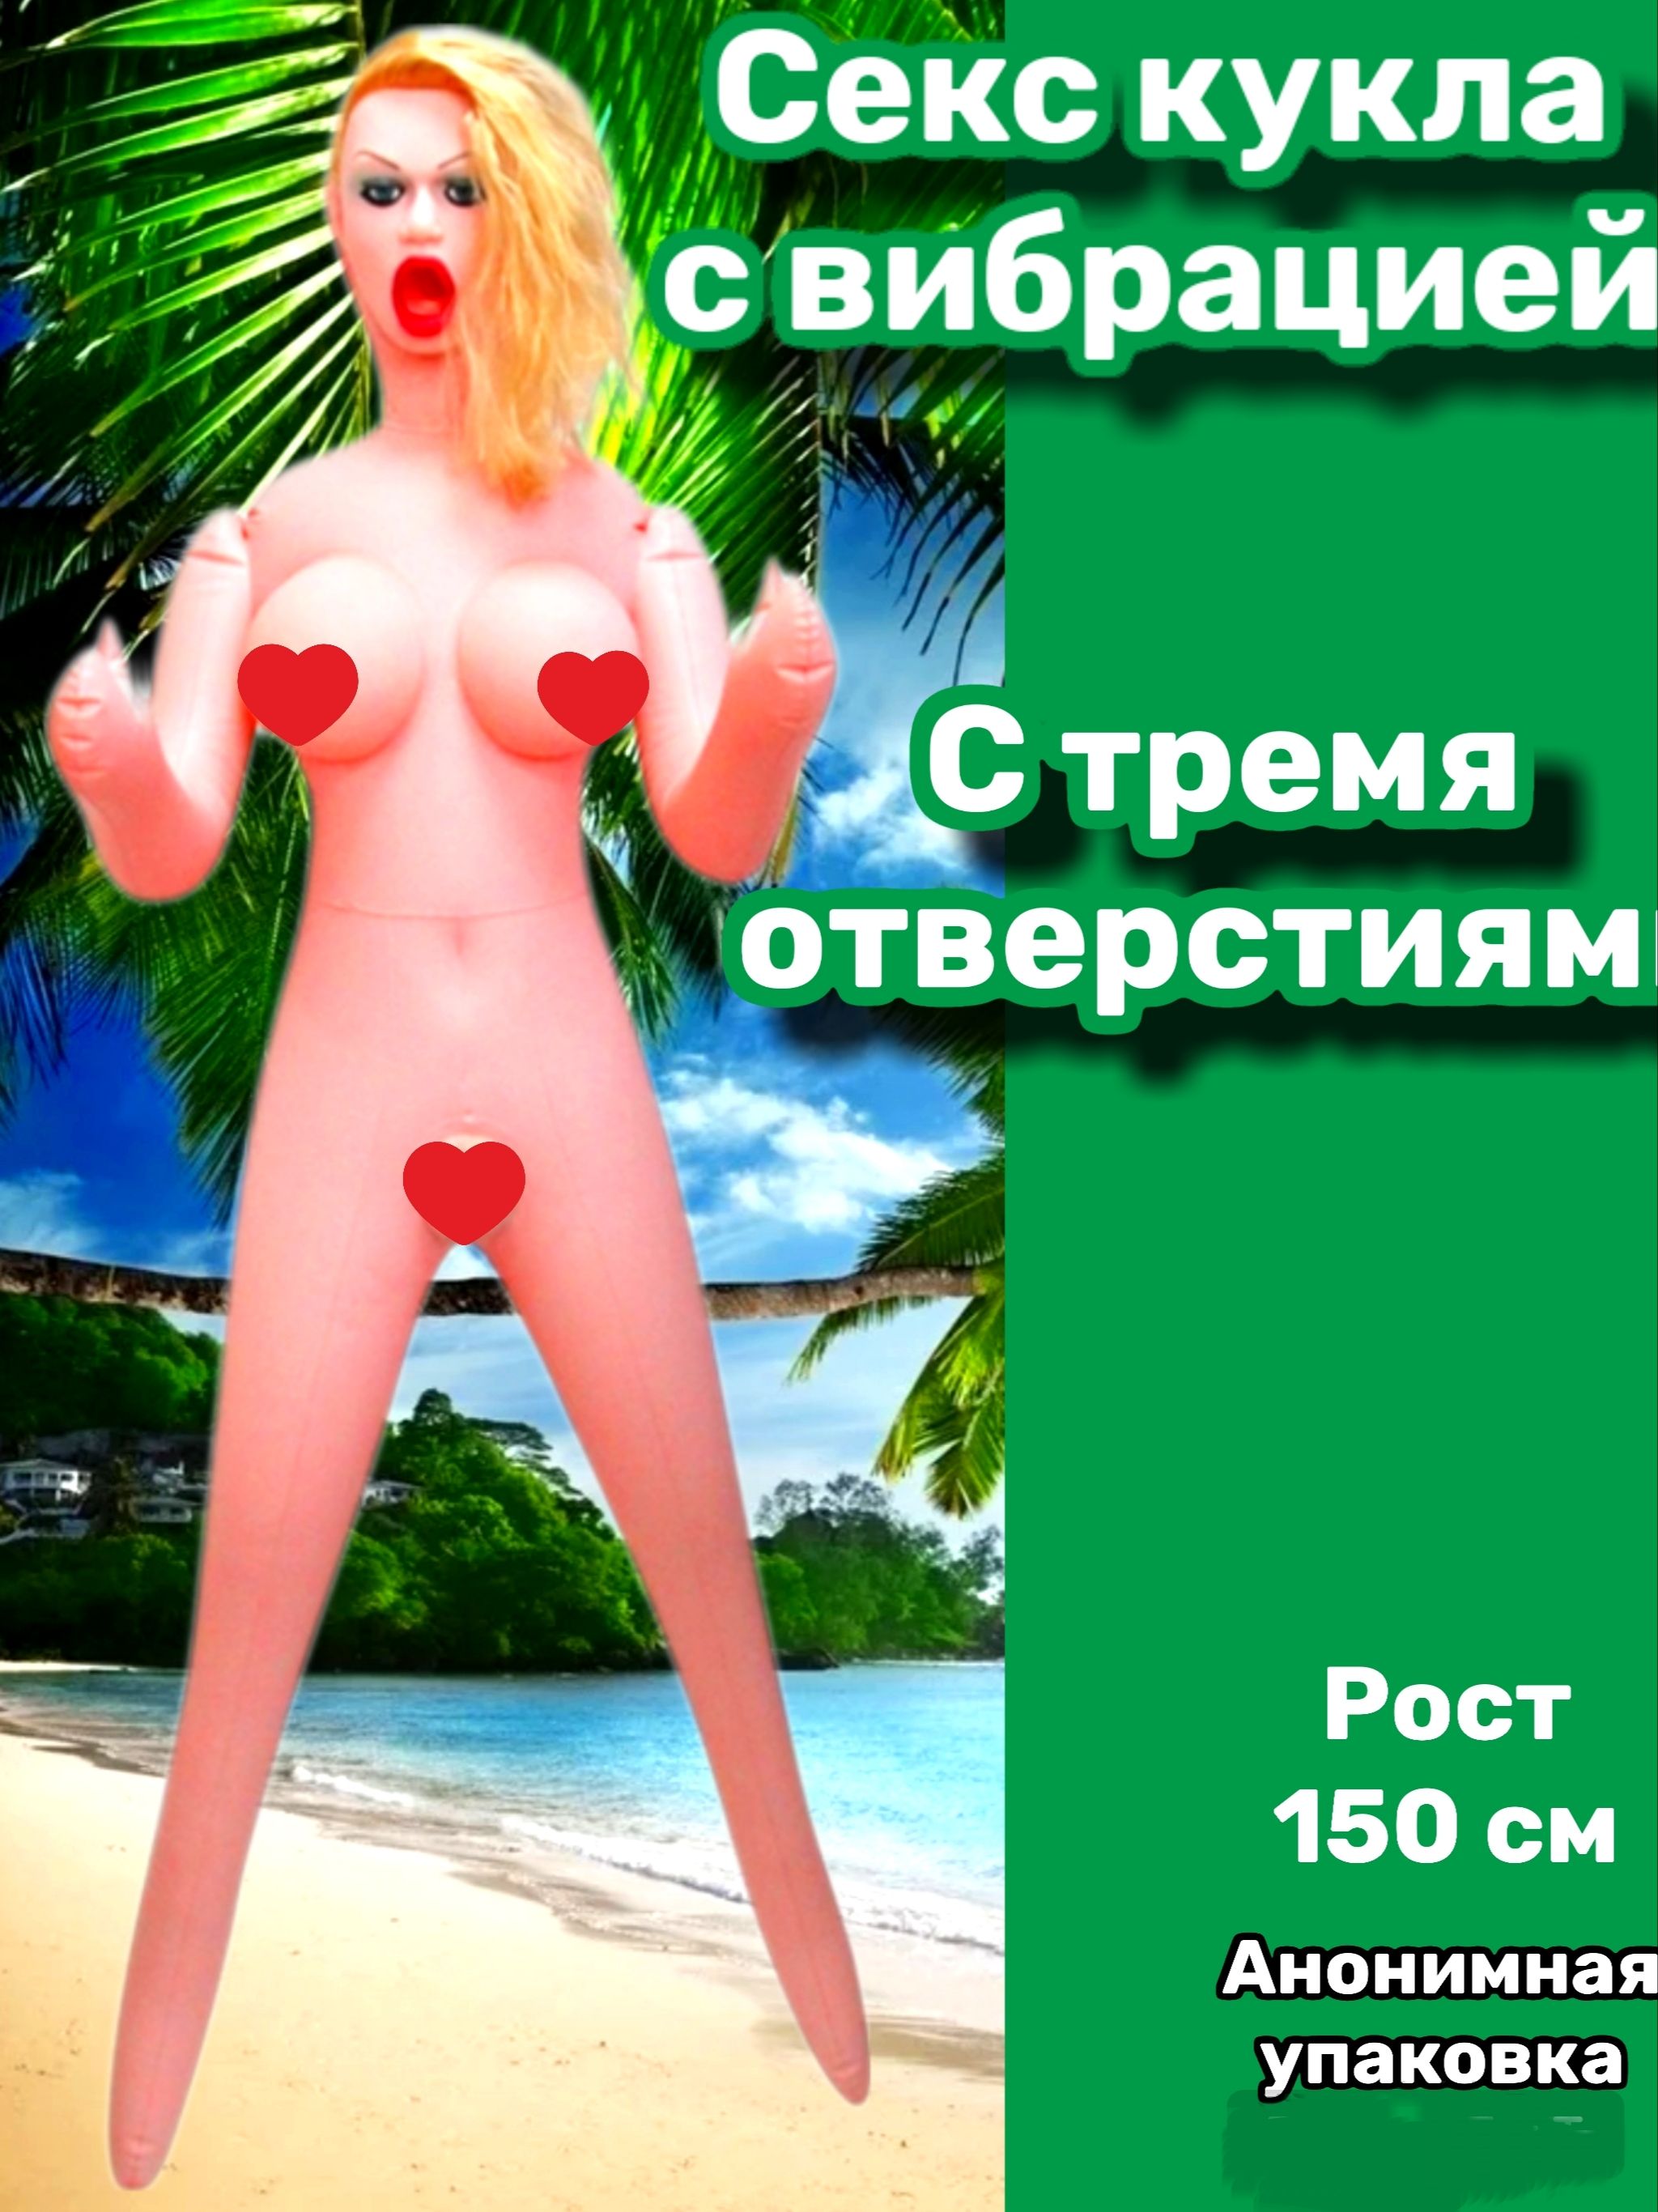 Высокое качество, надежность надувной мяч для секса и оборудование - city-lawyers.ru